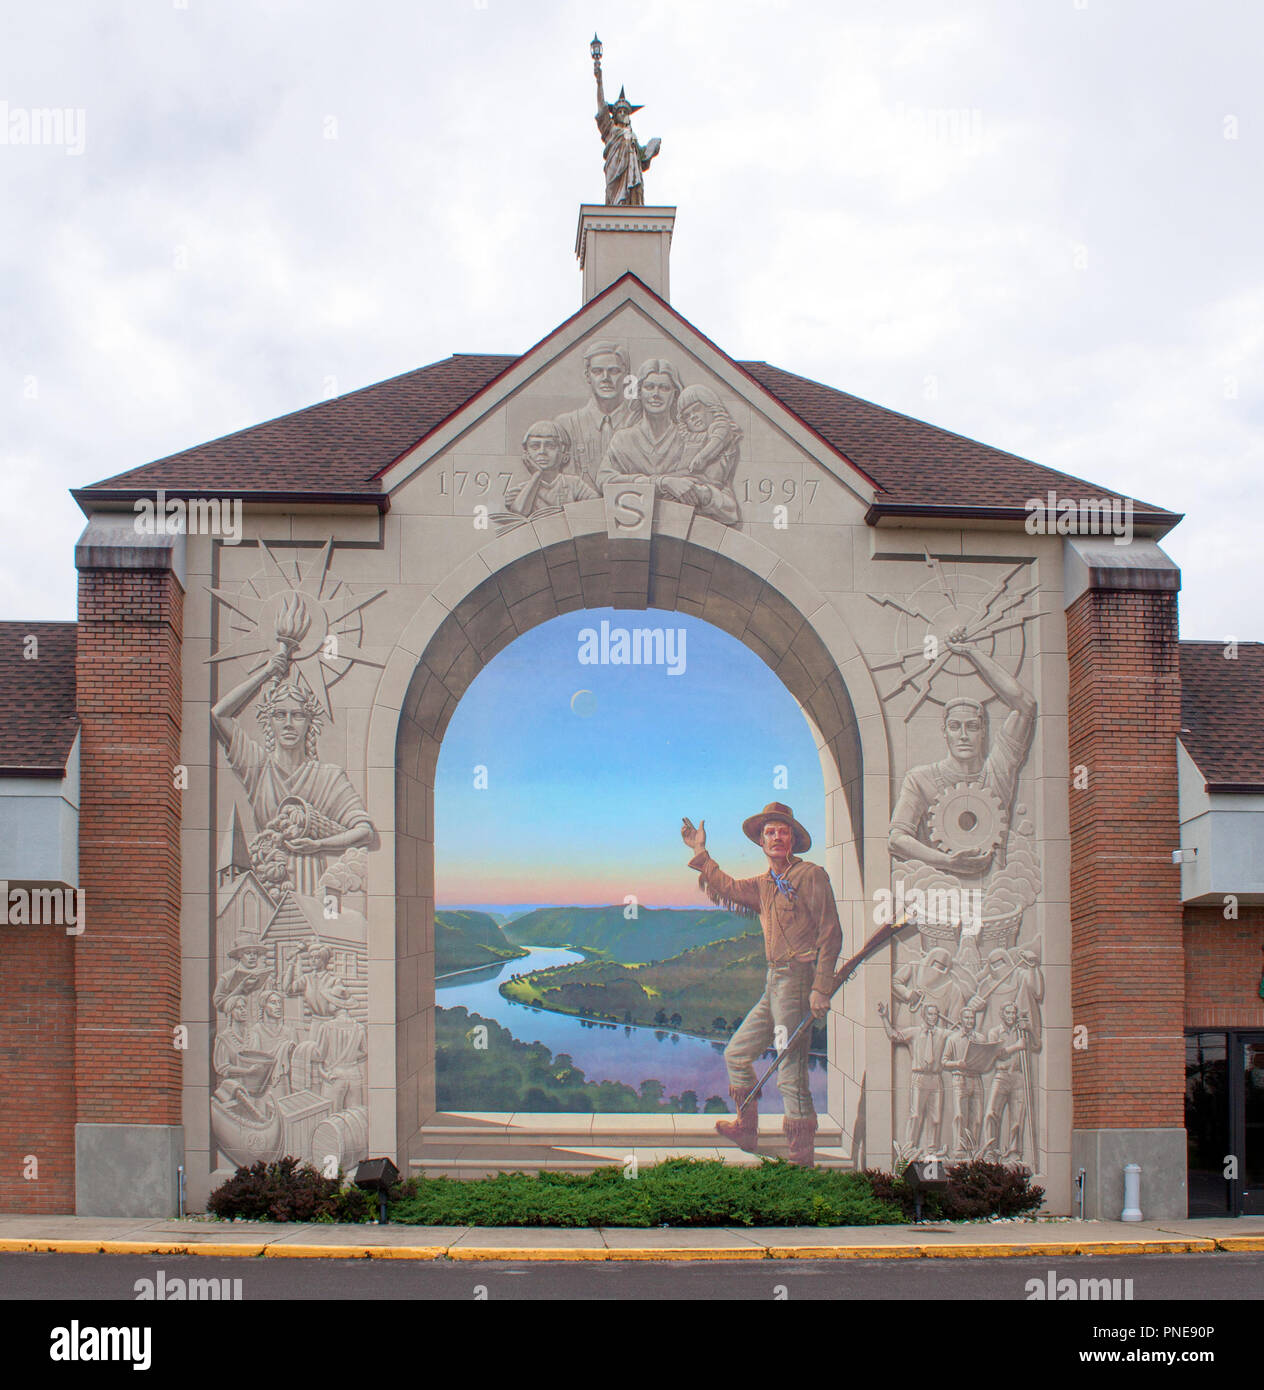 Pioneer Days fresque à Steubenville, Ohio Banque D'Images